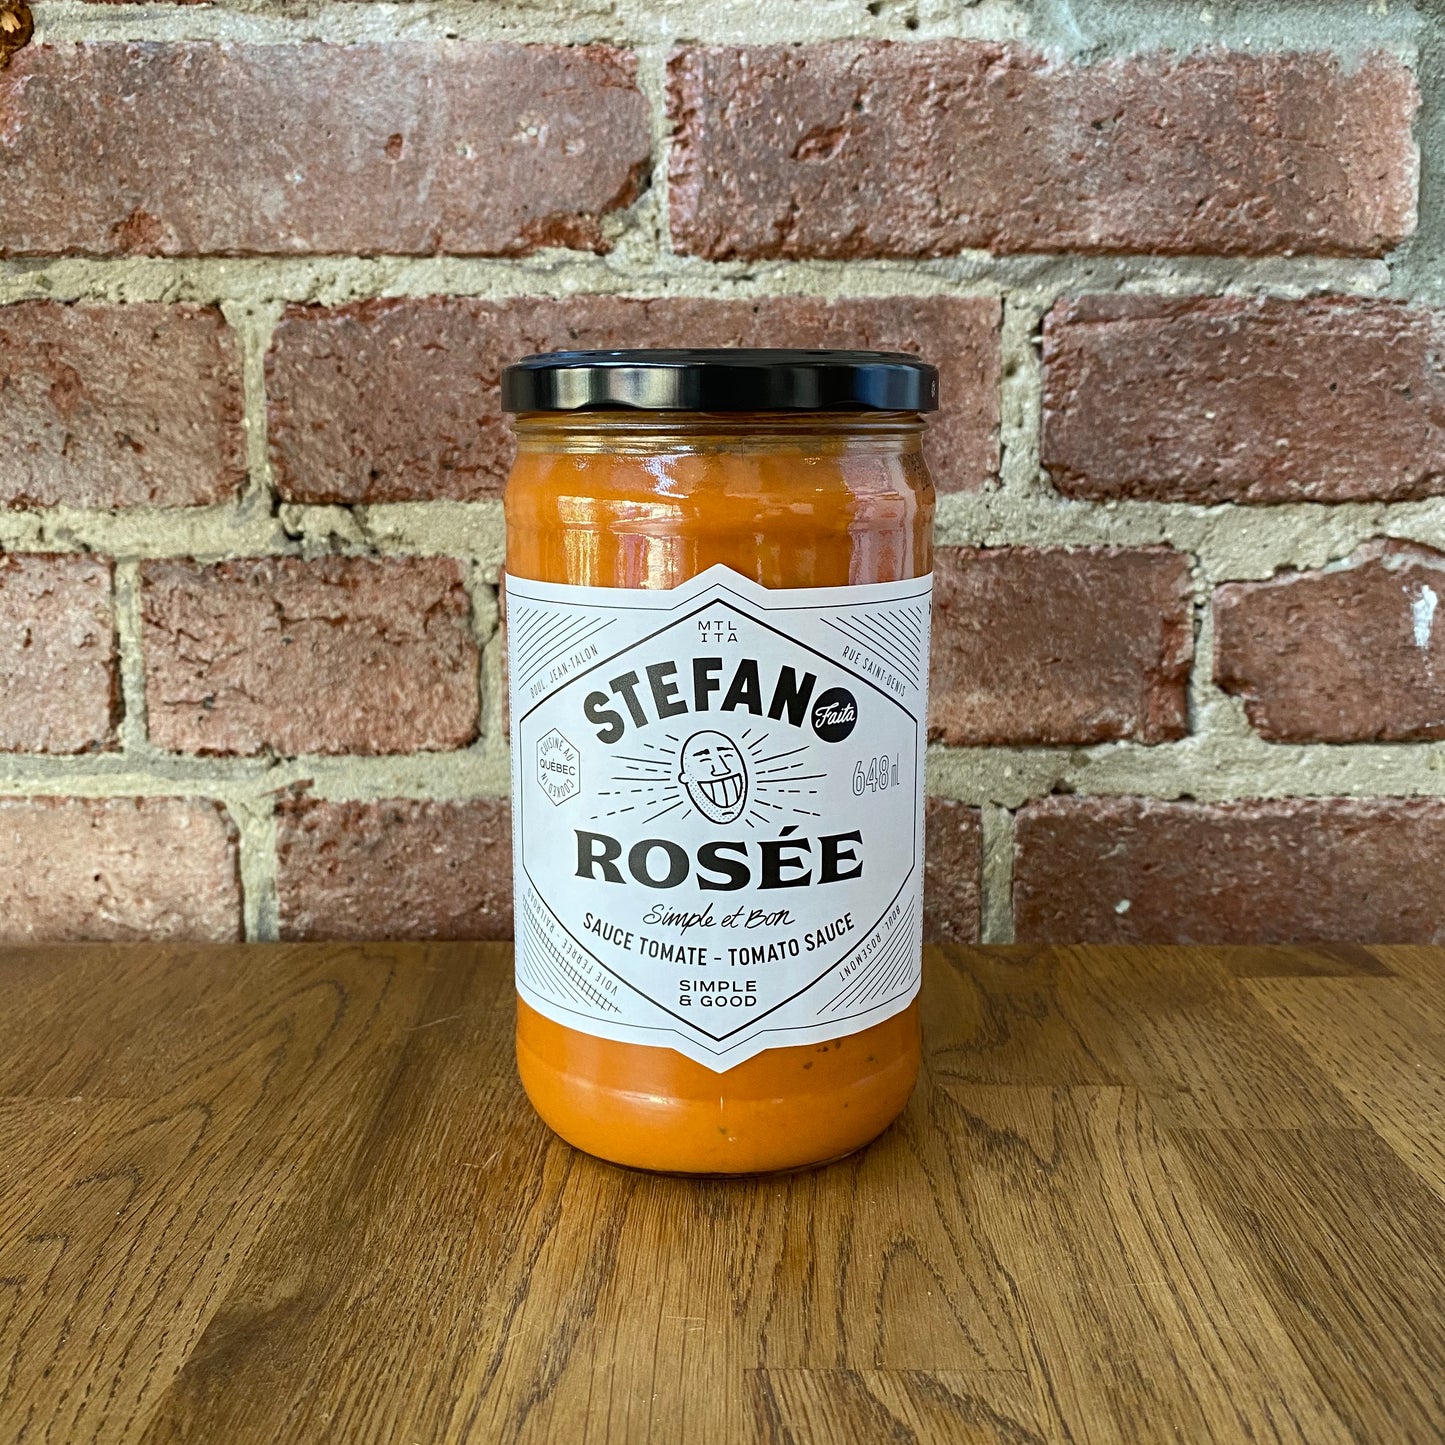 Rose Sauce